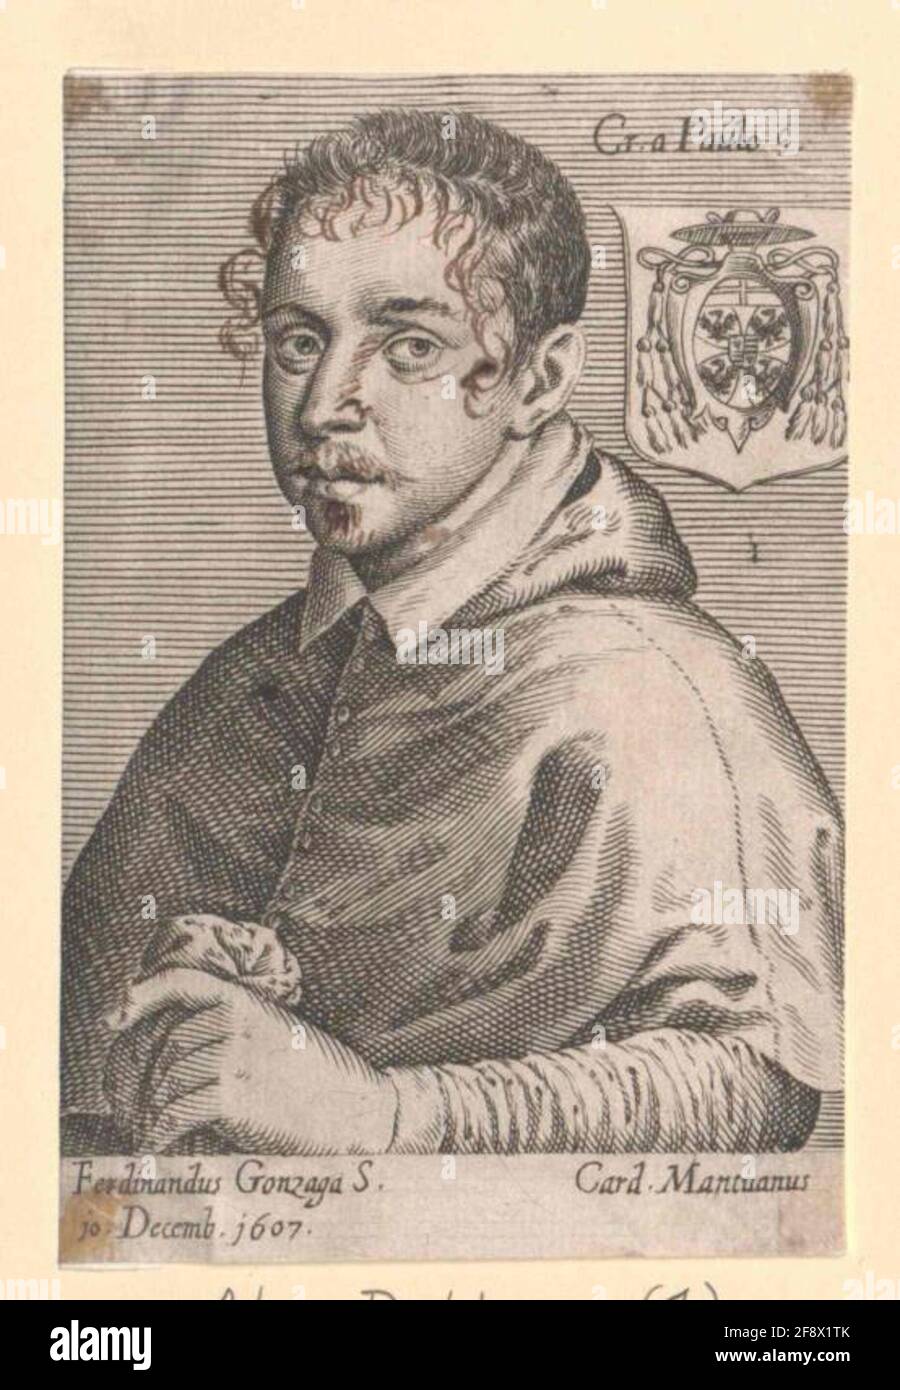 Ferdinand Gonzaga, Duke of Mantua. Stock Photo